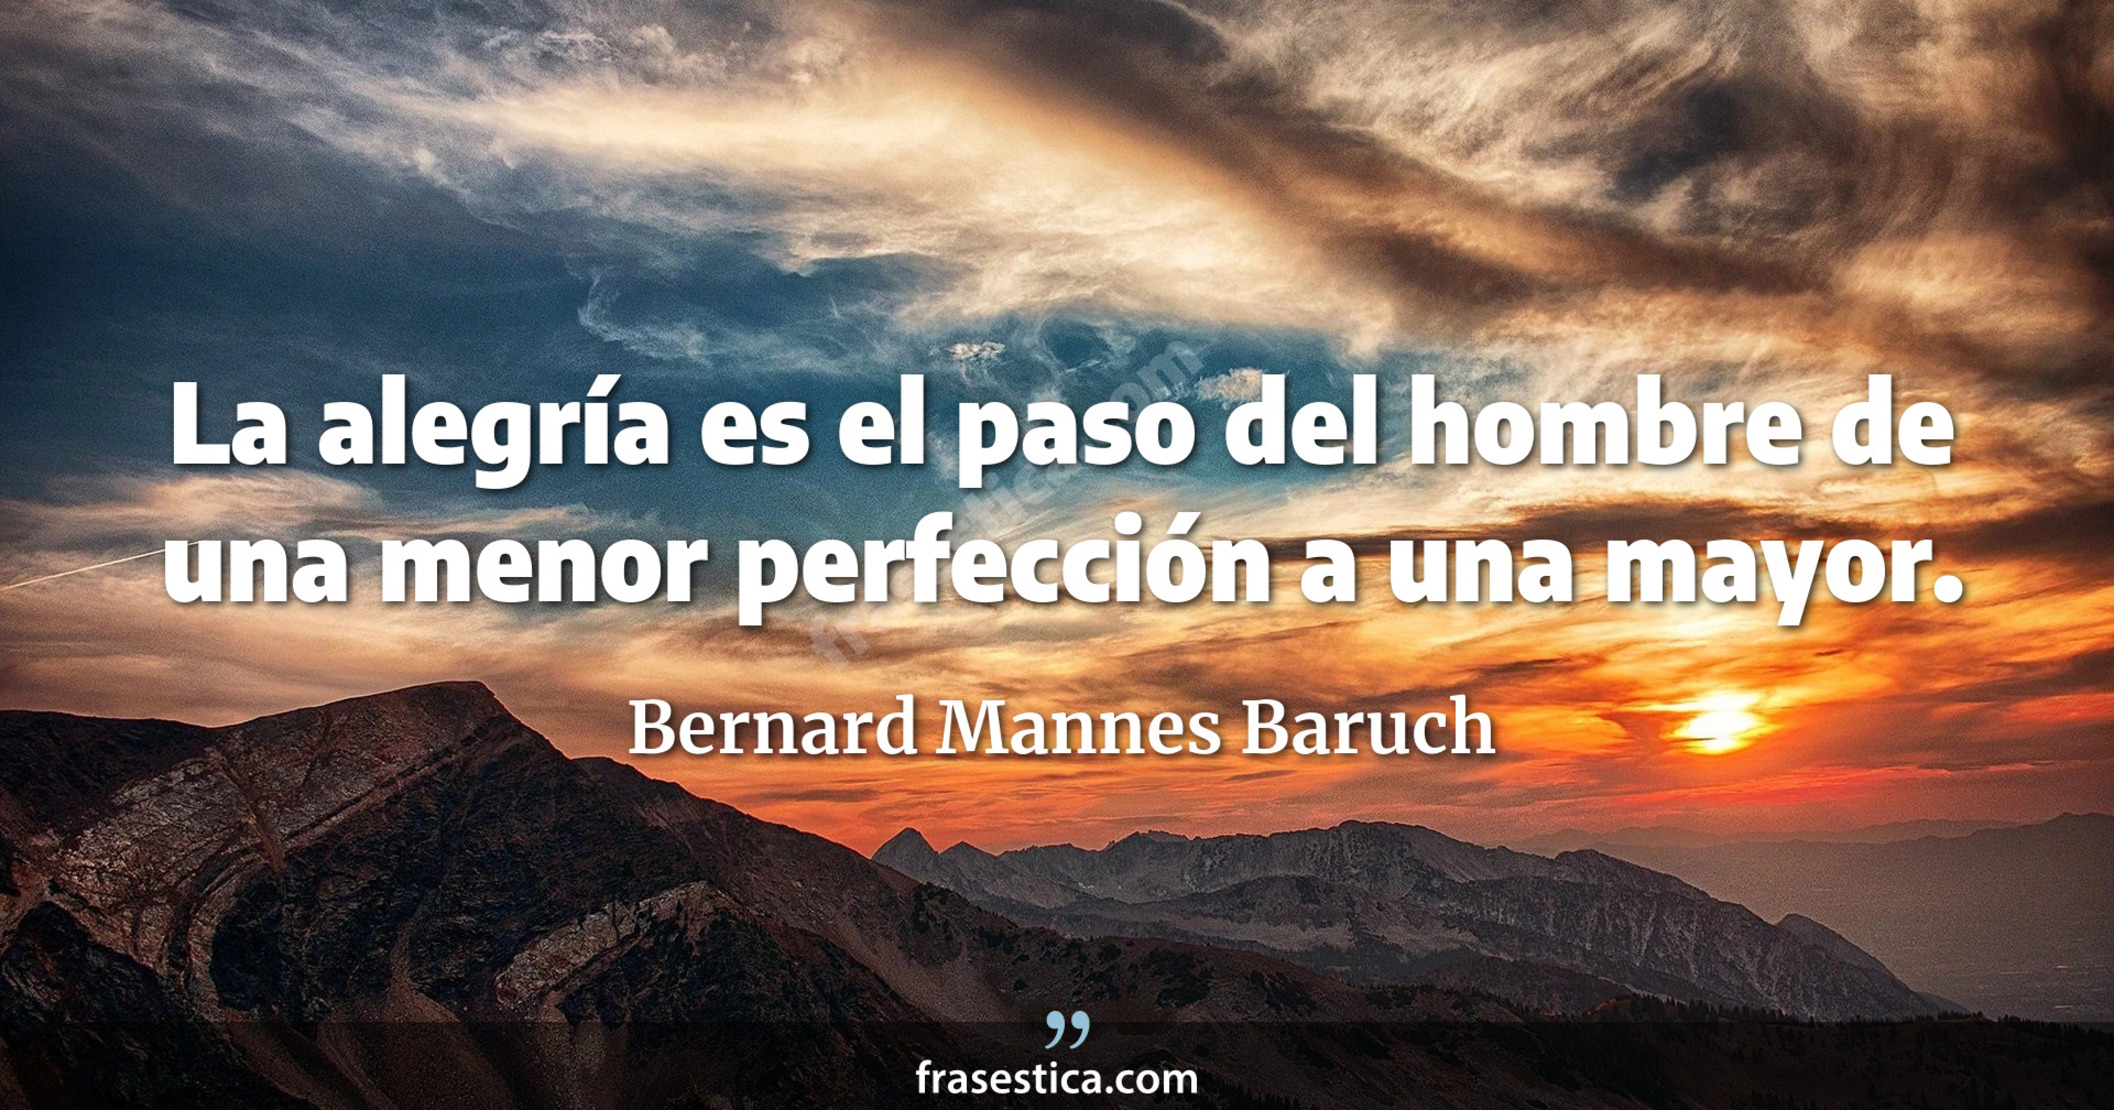 La alegría es el paso del hombre de una menor perfección a una mayor. - Bernard Mannes Baruch